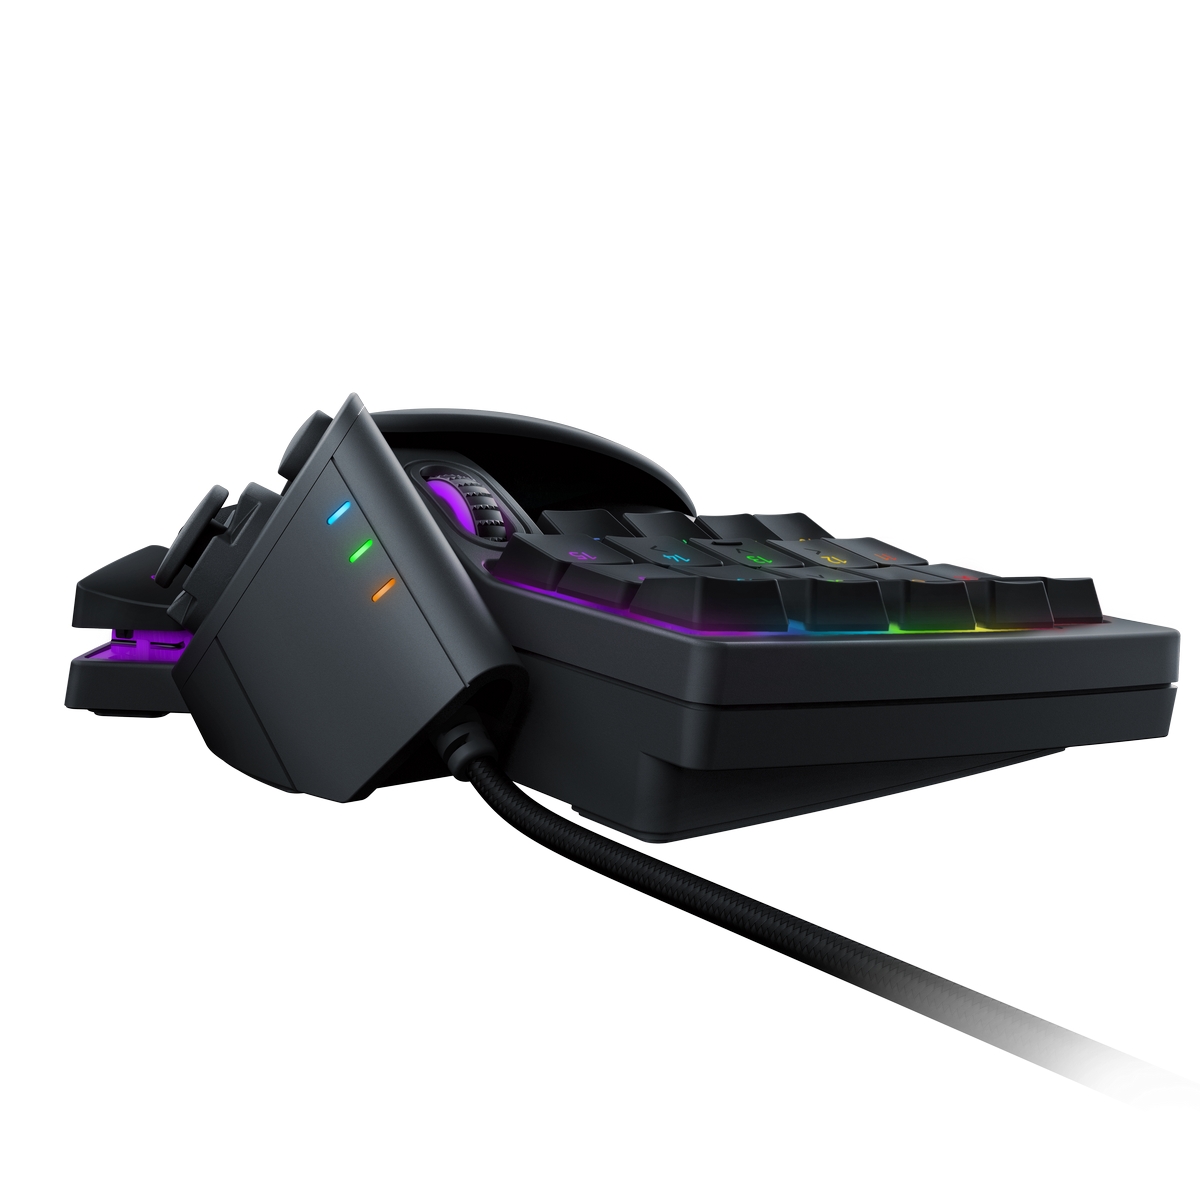 Razer - Razer Tartarus V2 - Chroma Expert RGB USB Gaming Keypad